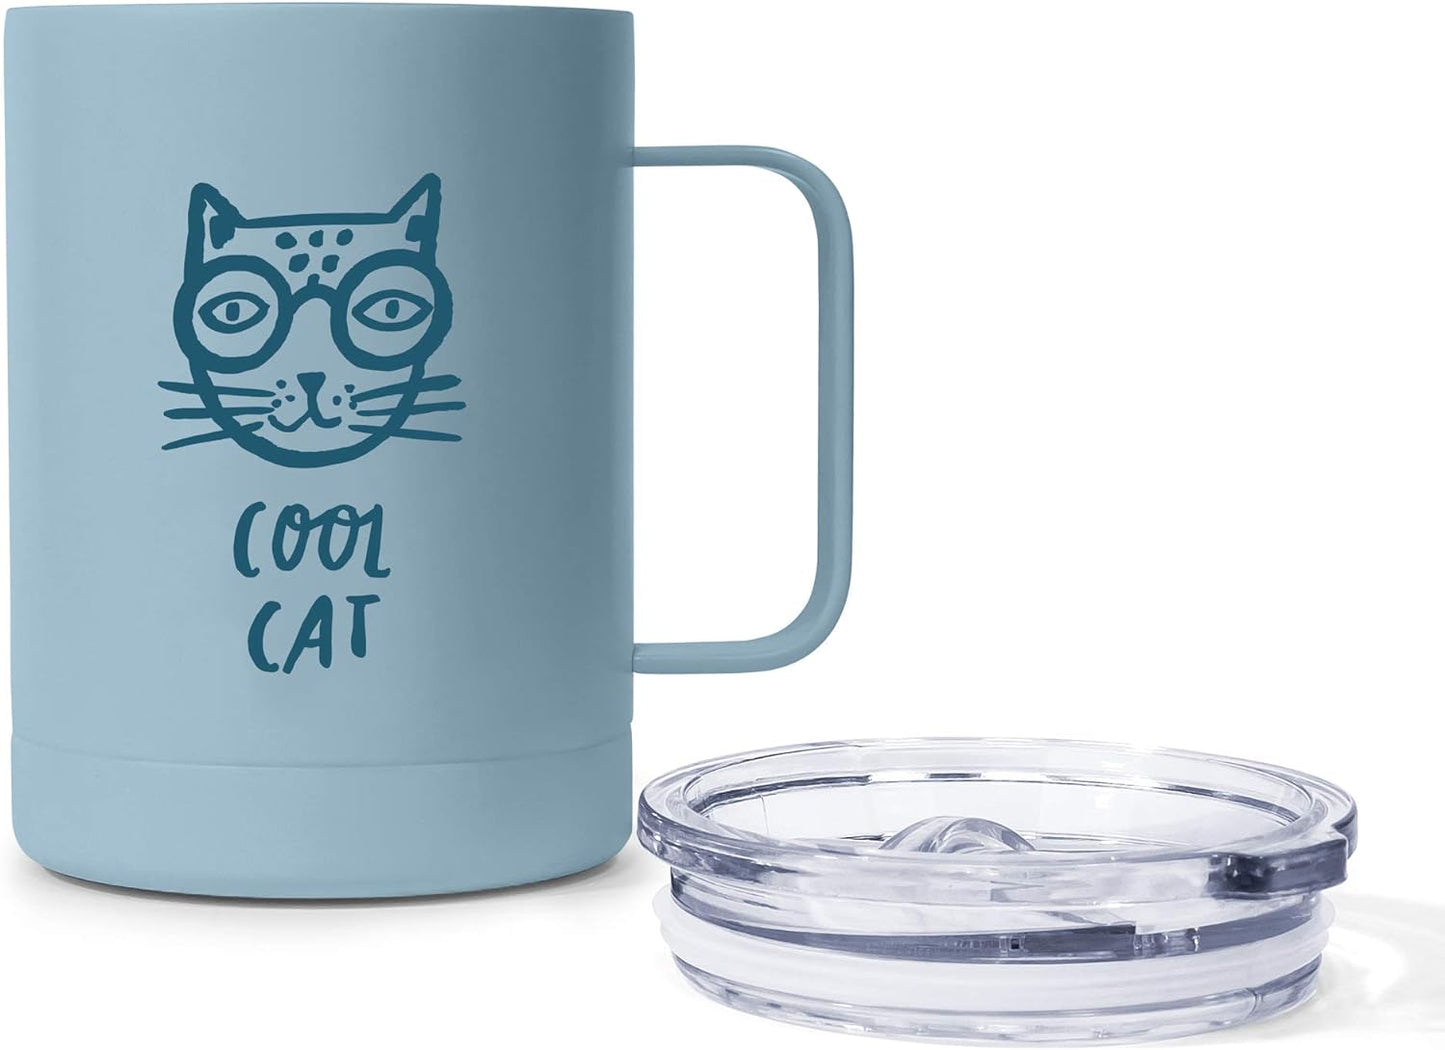 Cool cat coffee mug with handle